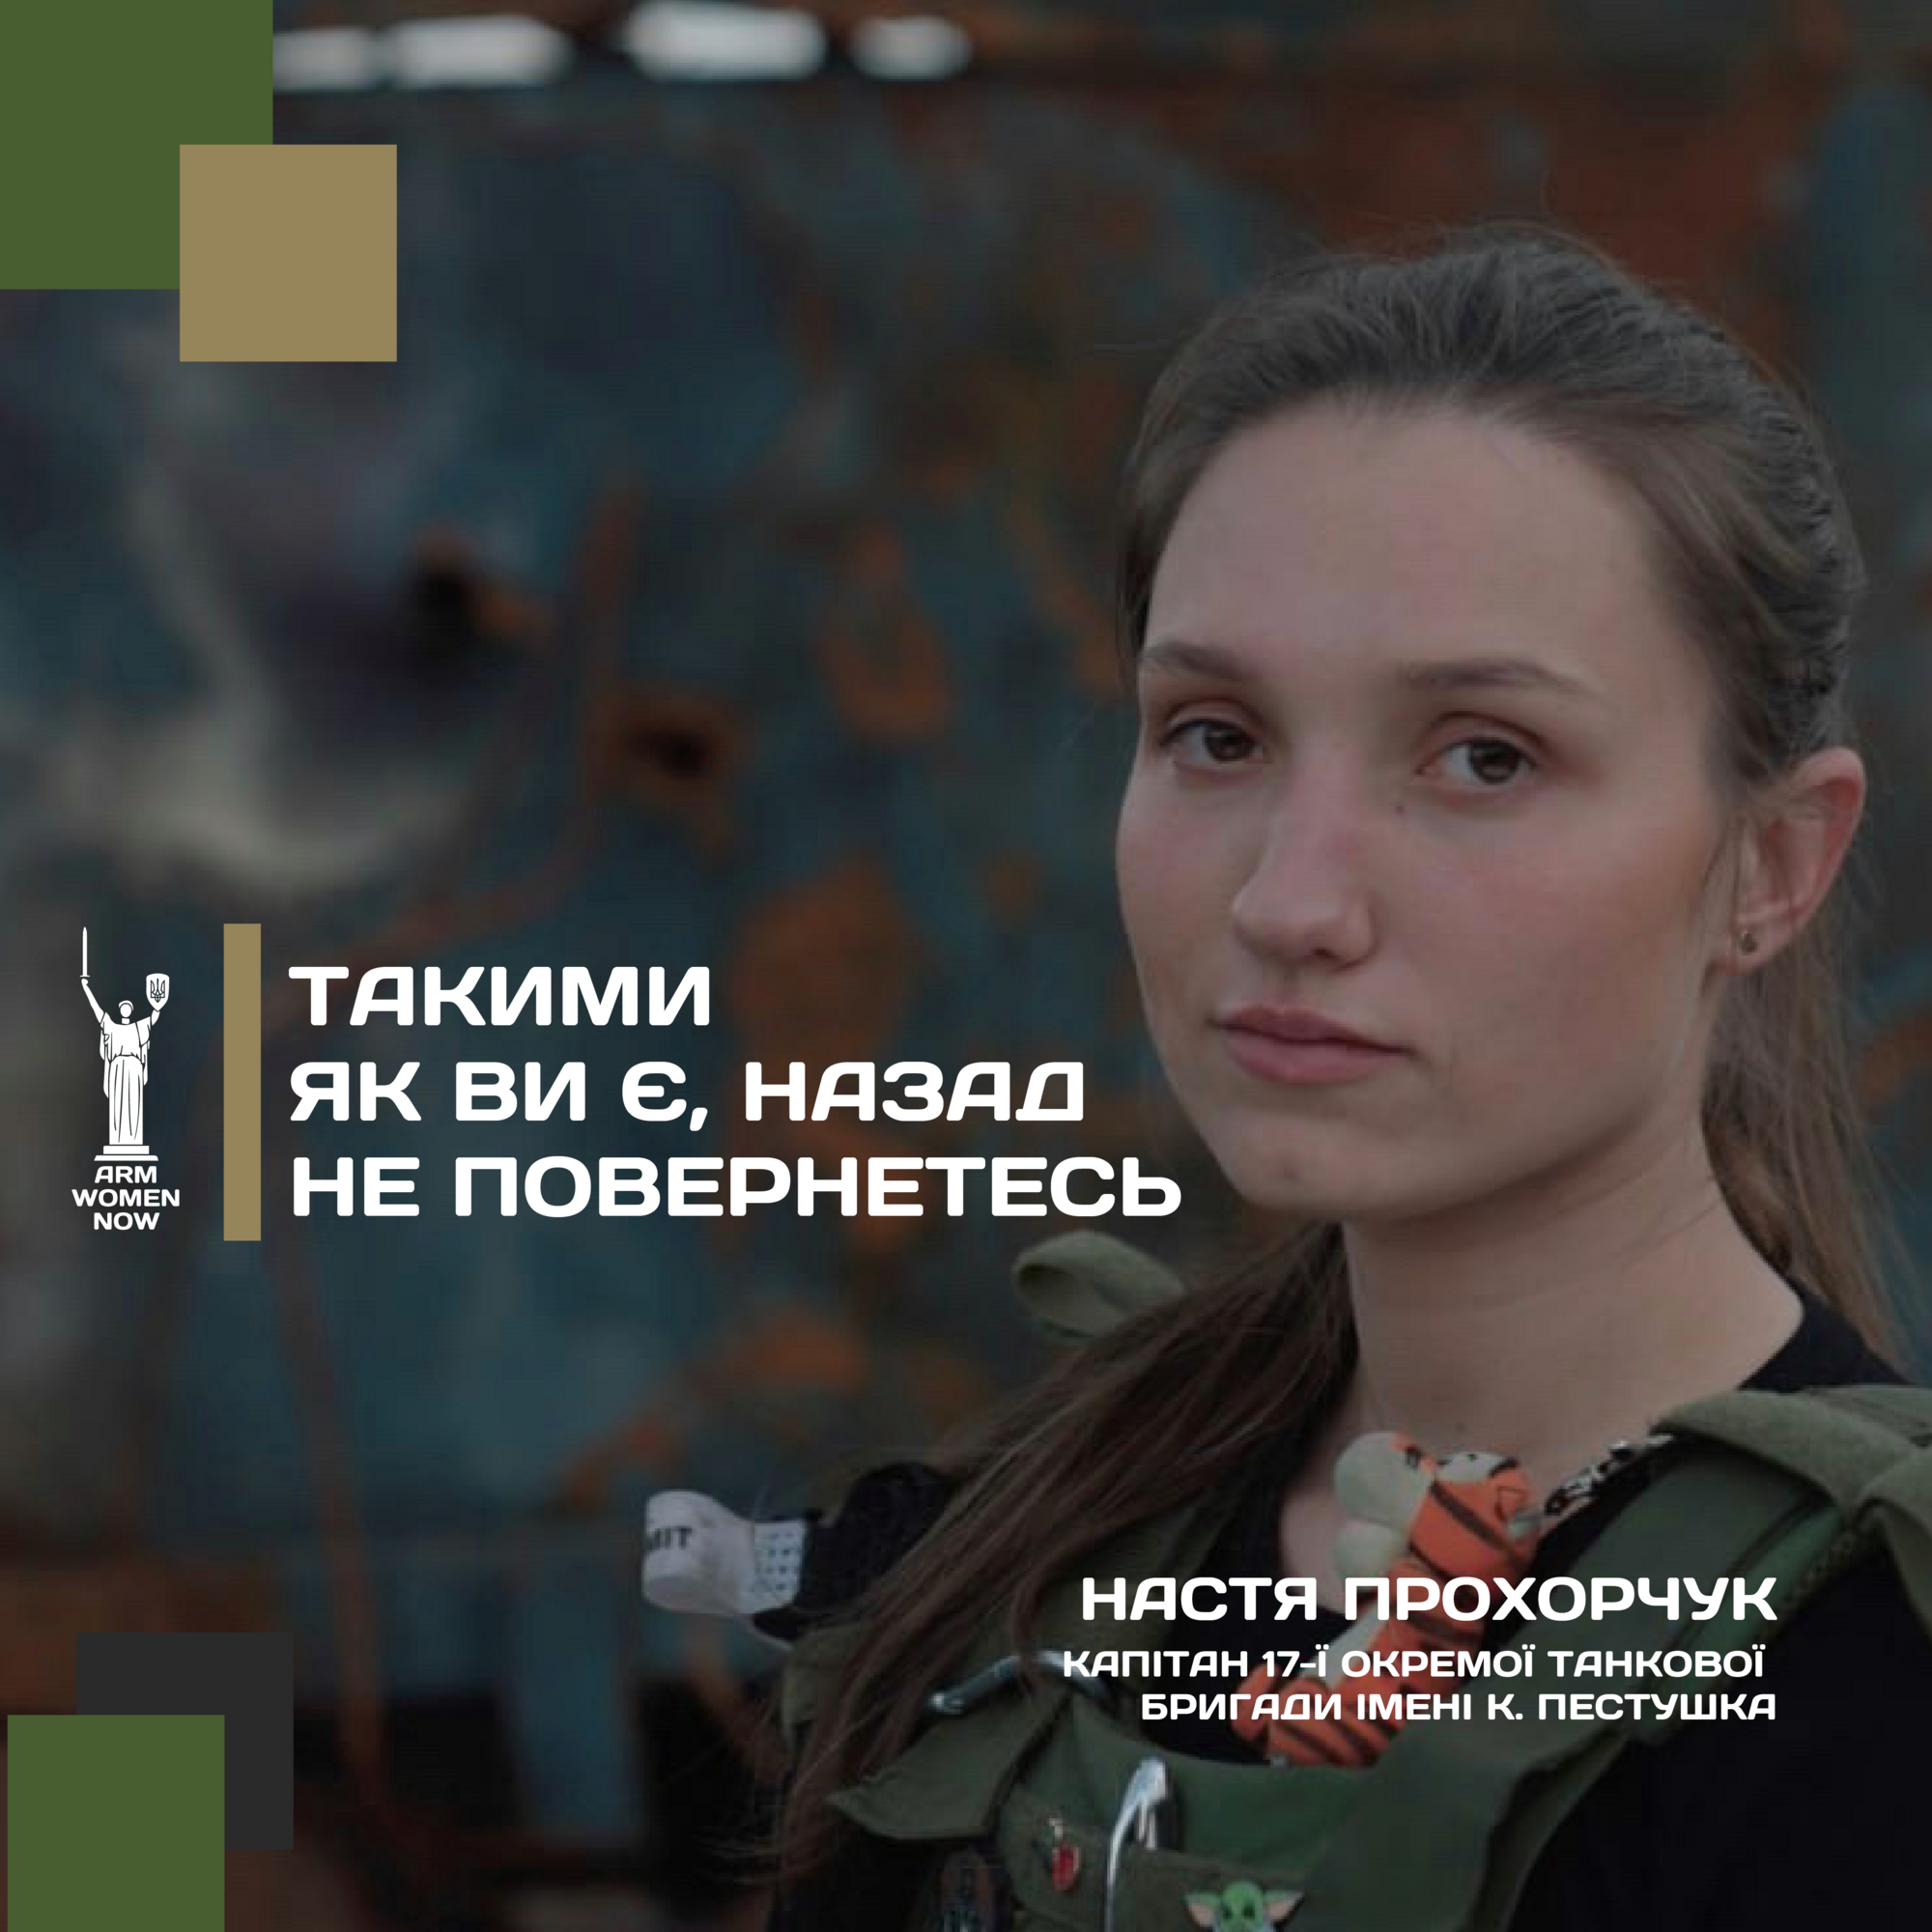 Основательница социального проекта ArmWomenNow Ирина Никорак: наш проект о равенстве, достоинстве и уважении к женщинам в армии